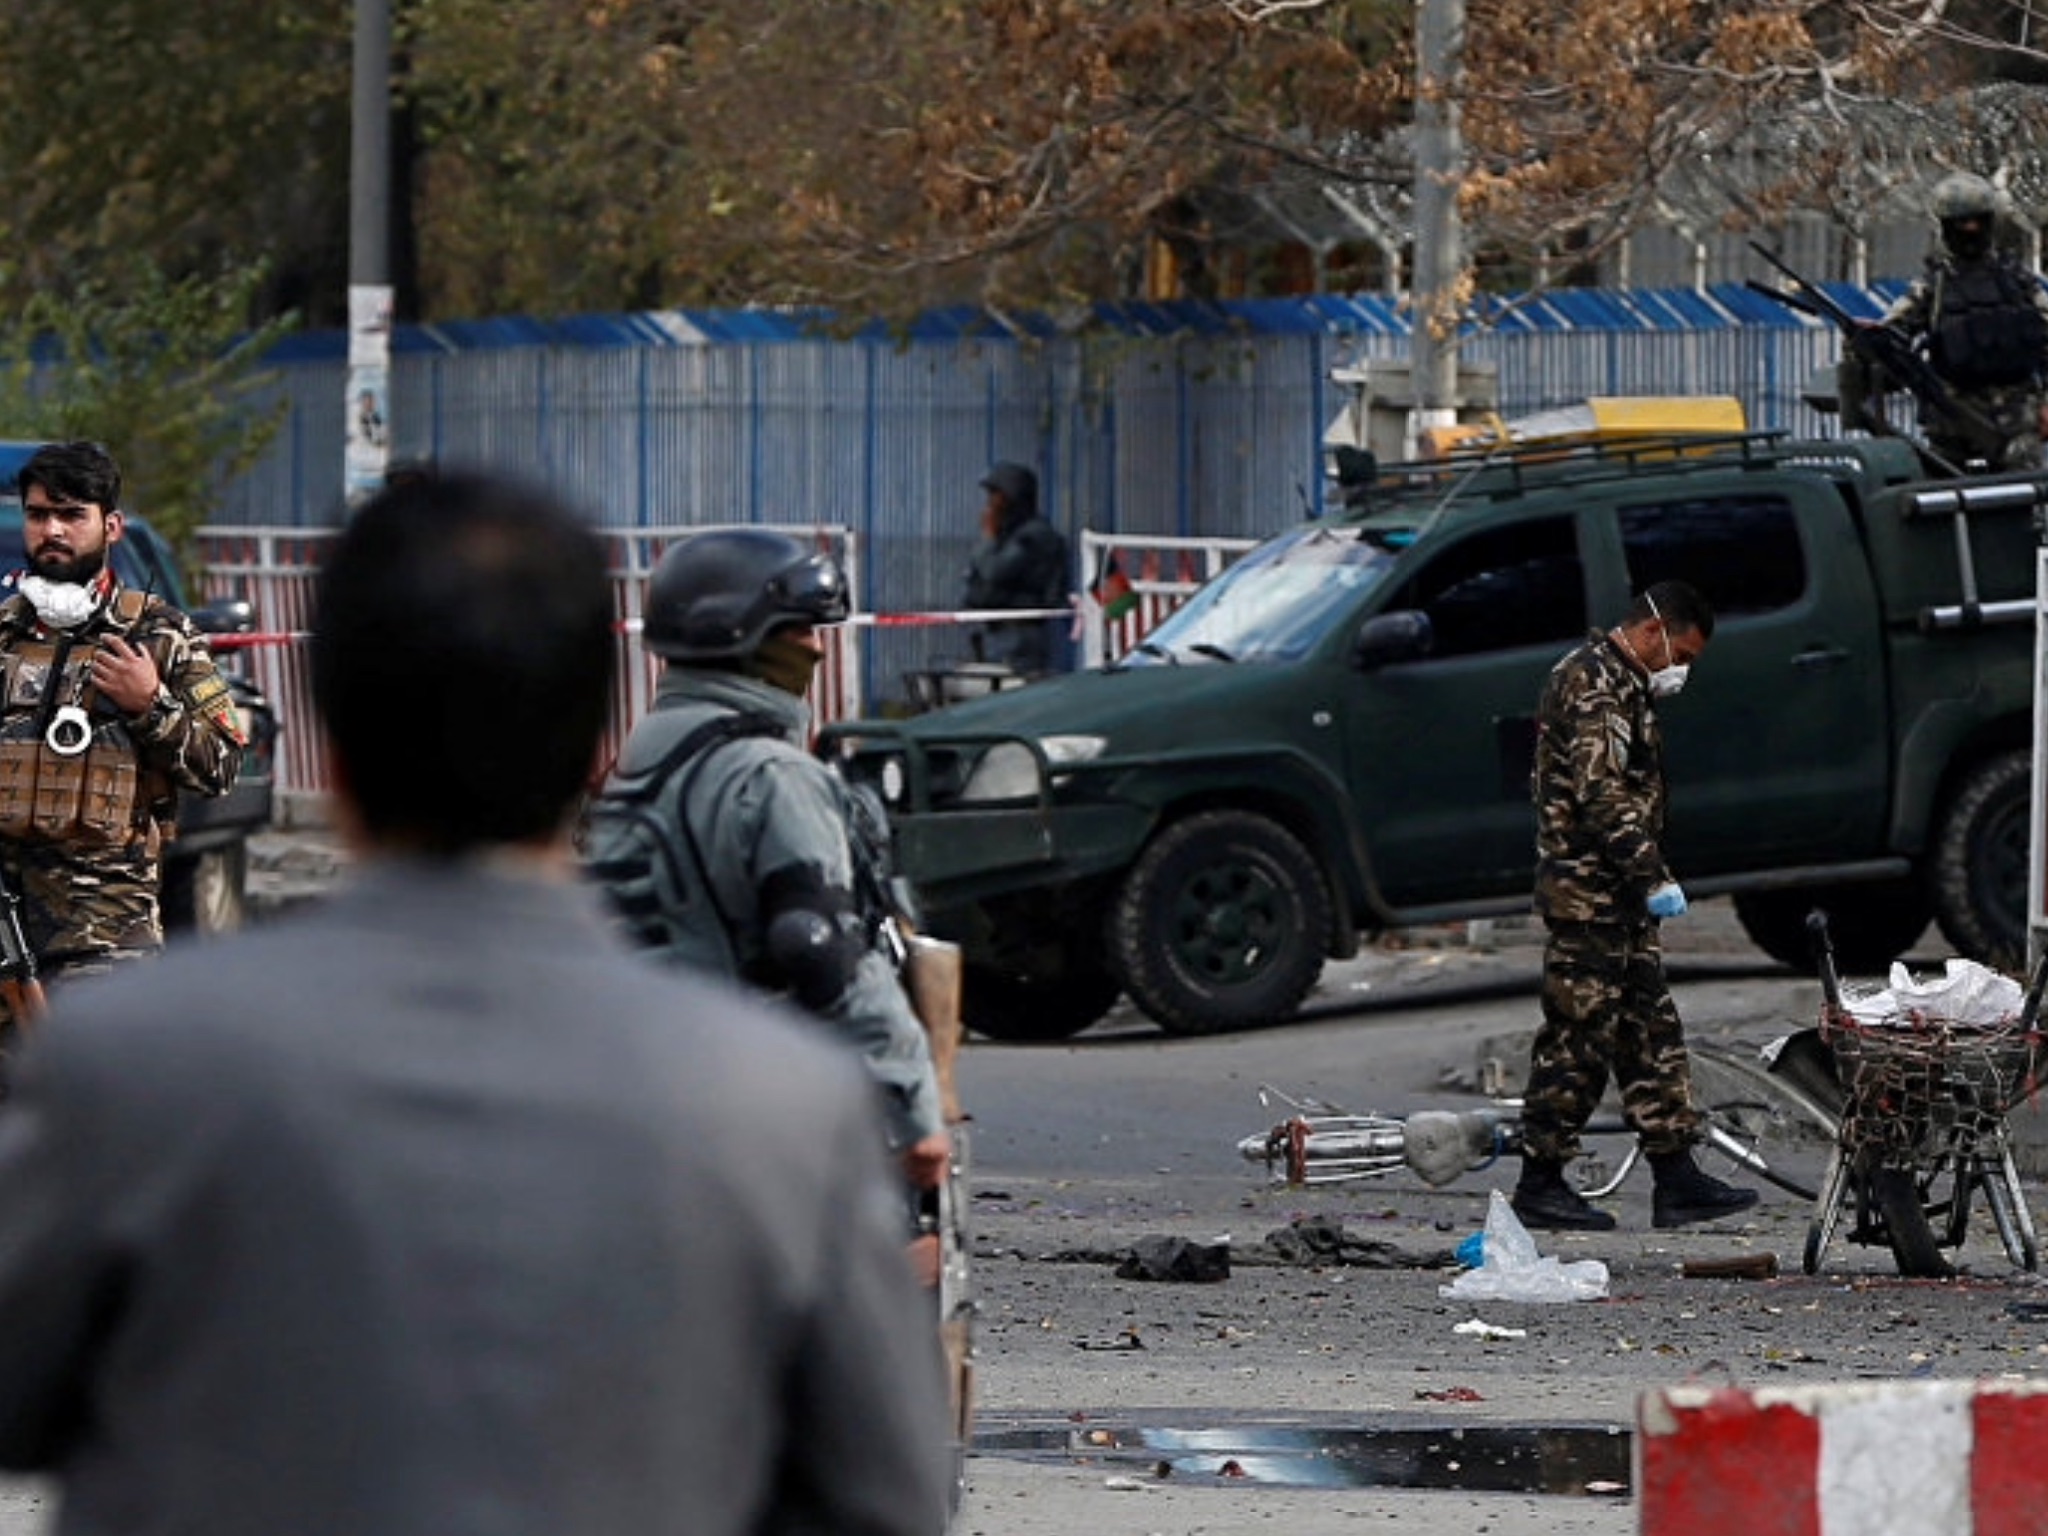 عرس يتحول إلى مأتم.. مقتل 40 شخصا وإصابة 60 في انفجار هزّ قاعة أفراح في كابول